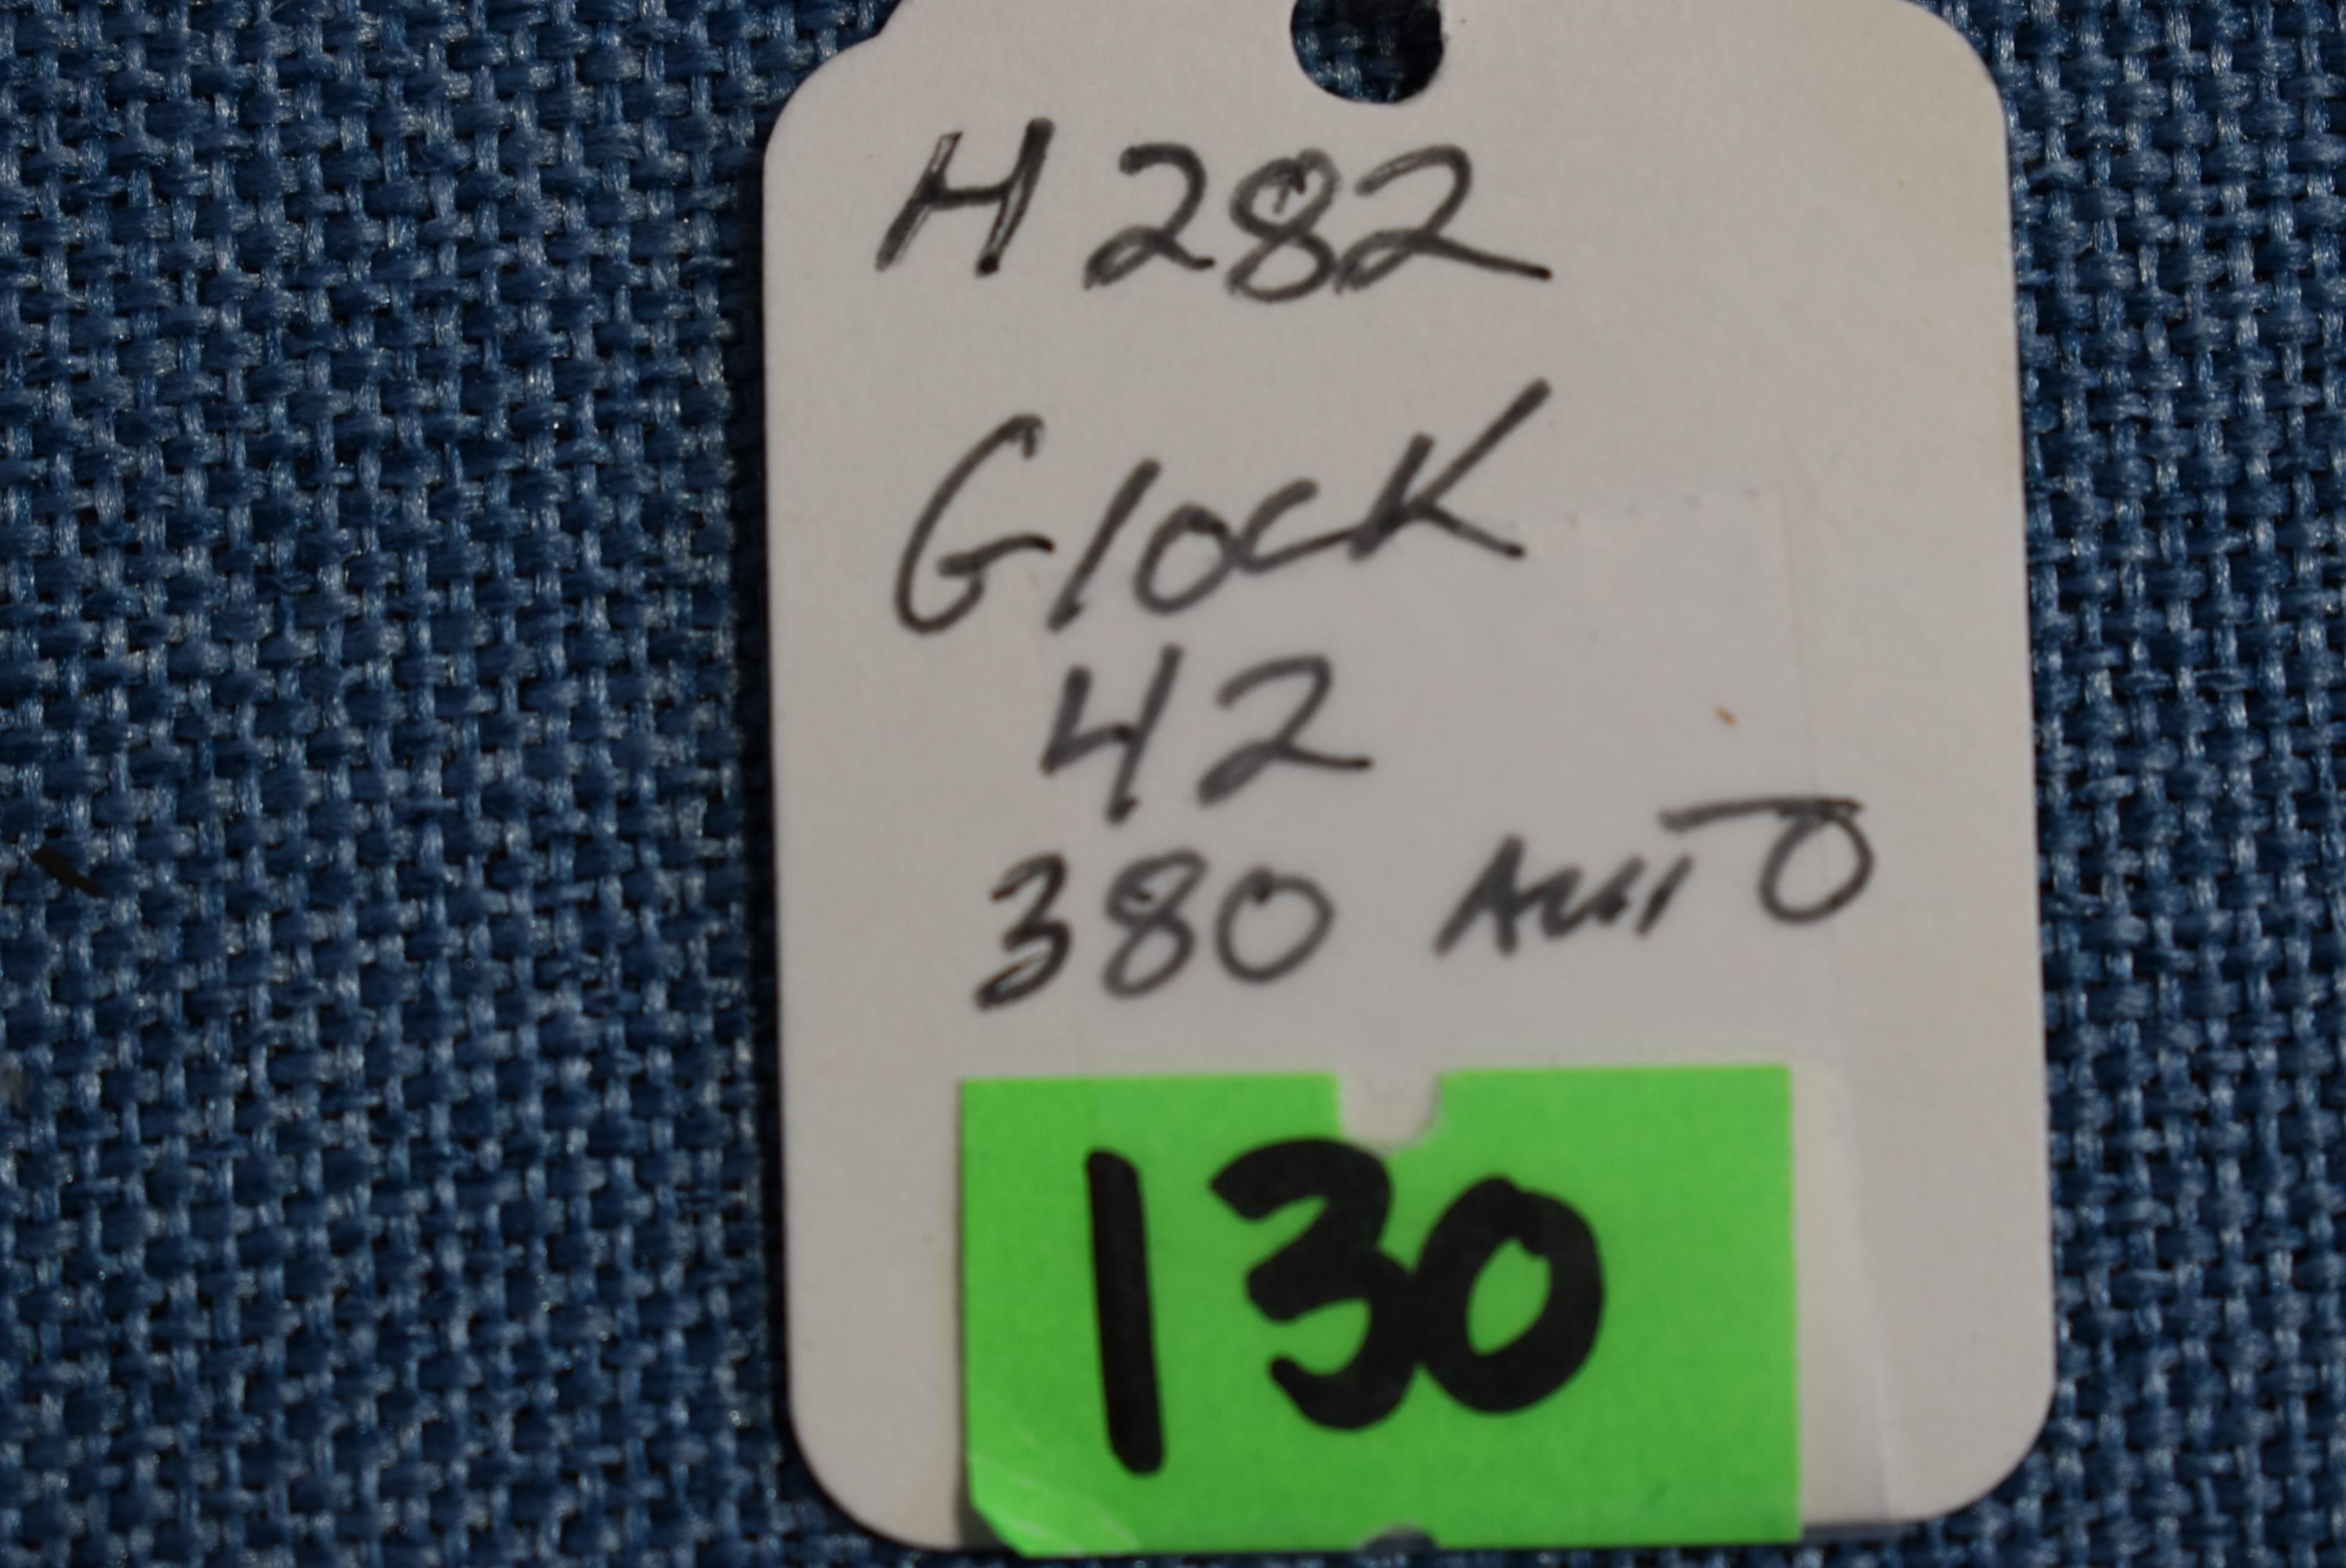 FIREARM/GUN GLOCK 42!! H 282